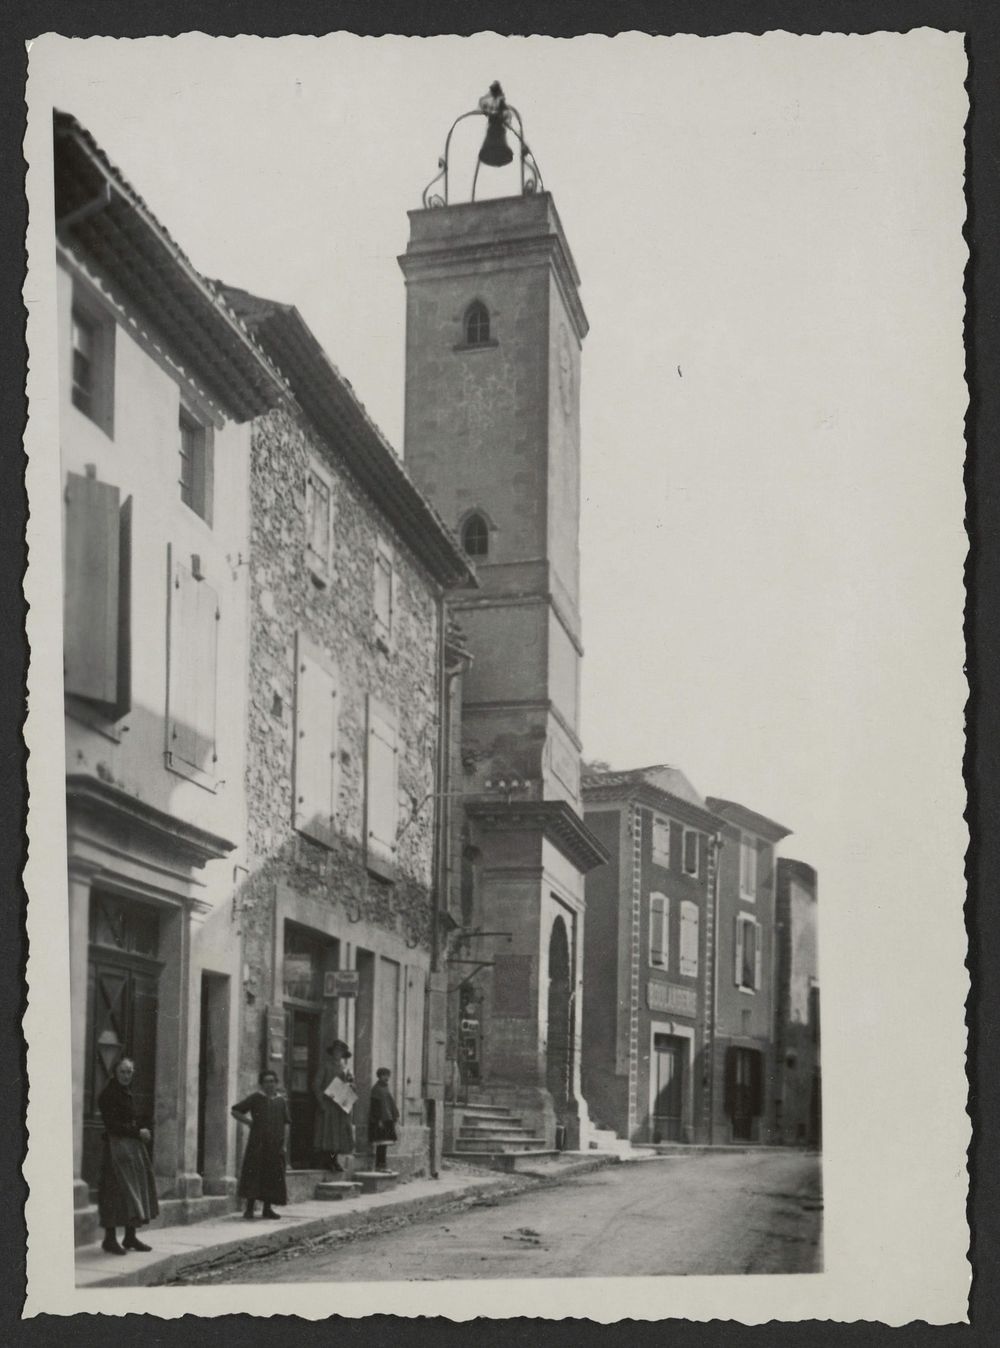 Tour de l'horloge dans la Grande Rue de Donzère